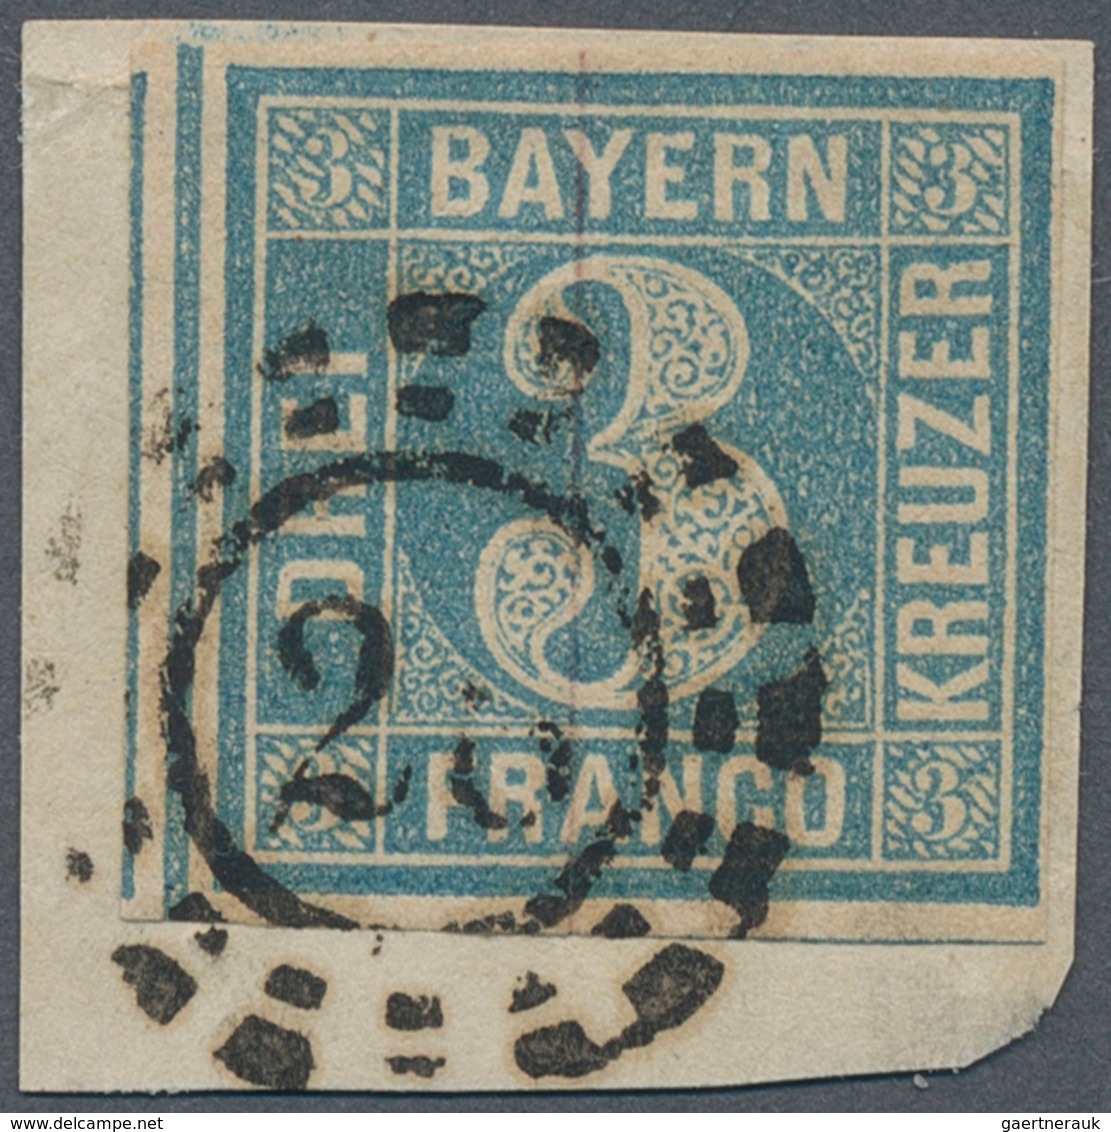 31183 Bayern - Marken und Briefe: Außergewöhnliche Sammlung von Bayern Raritäten von der Vorphilatelie bis